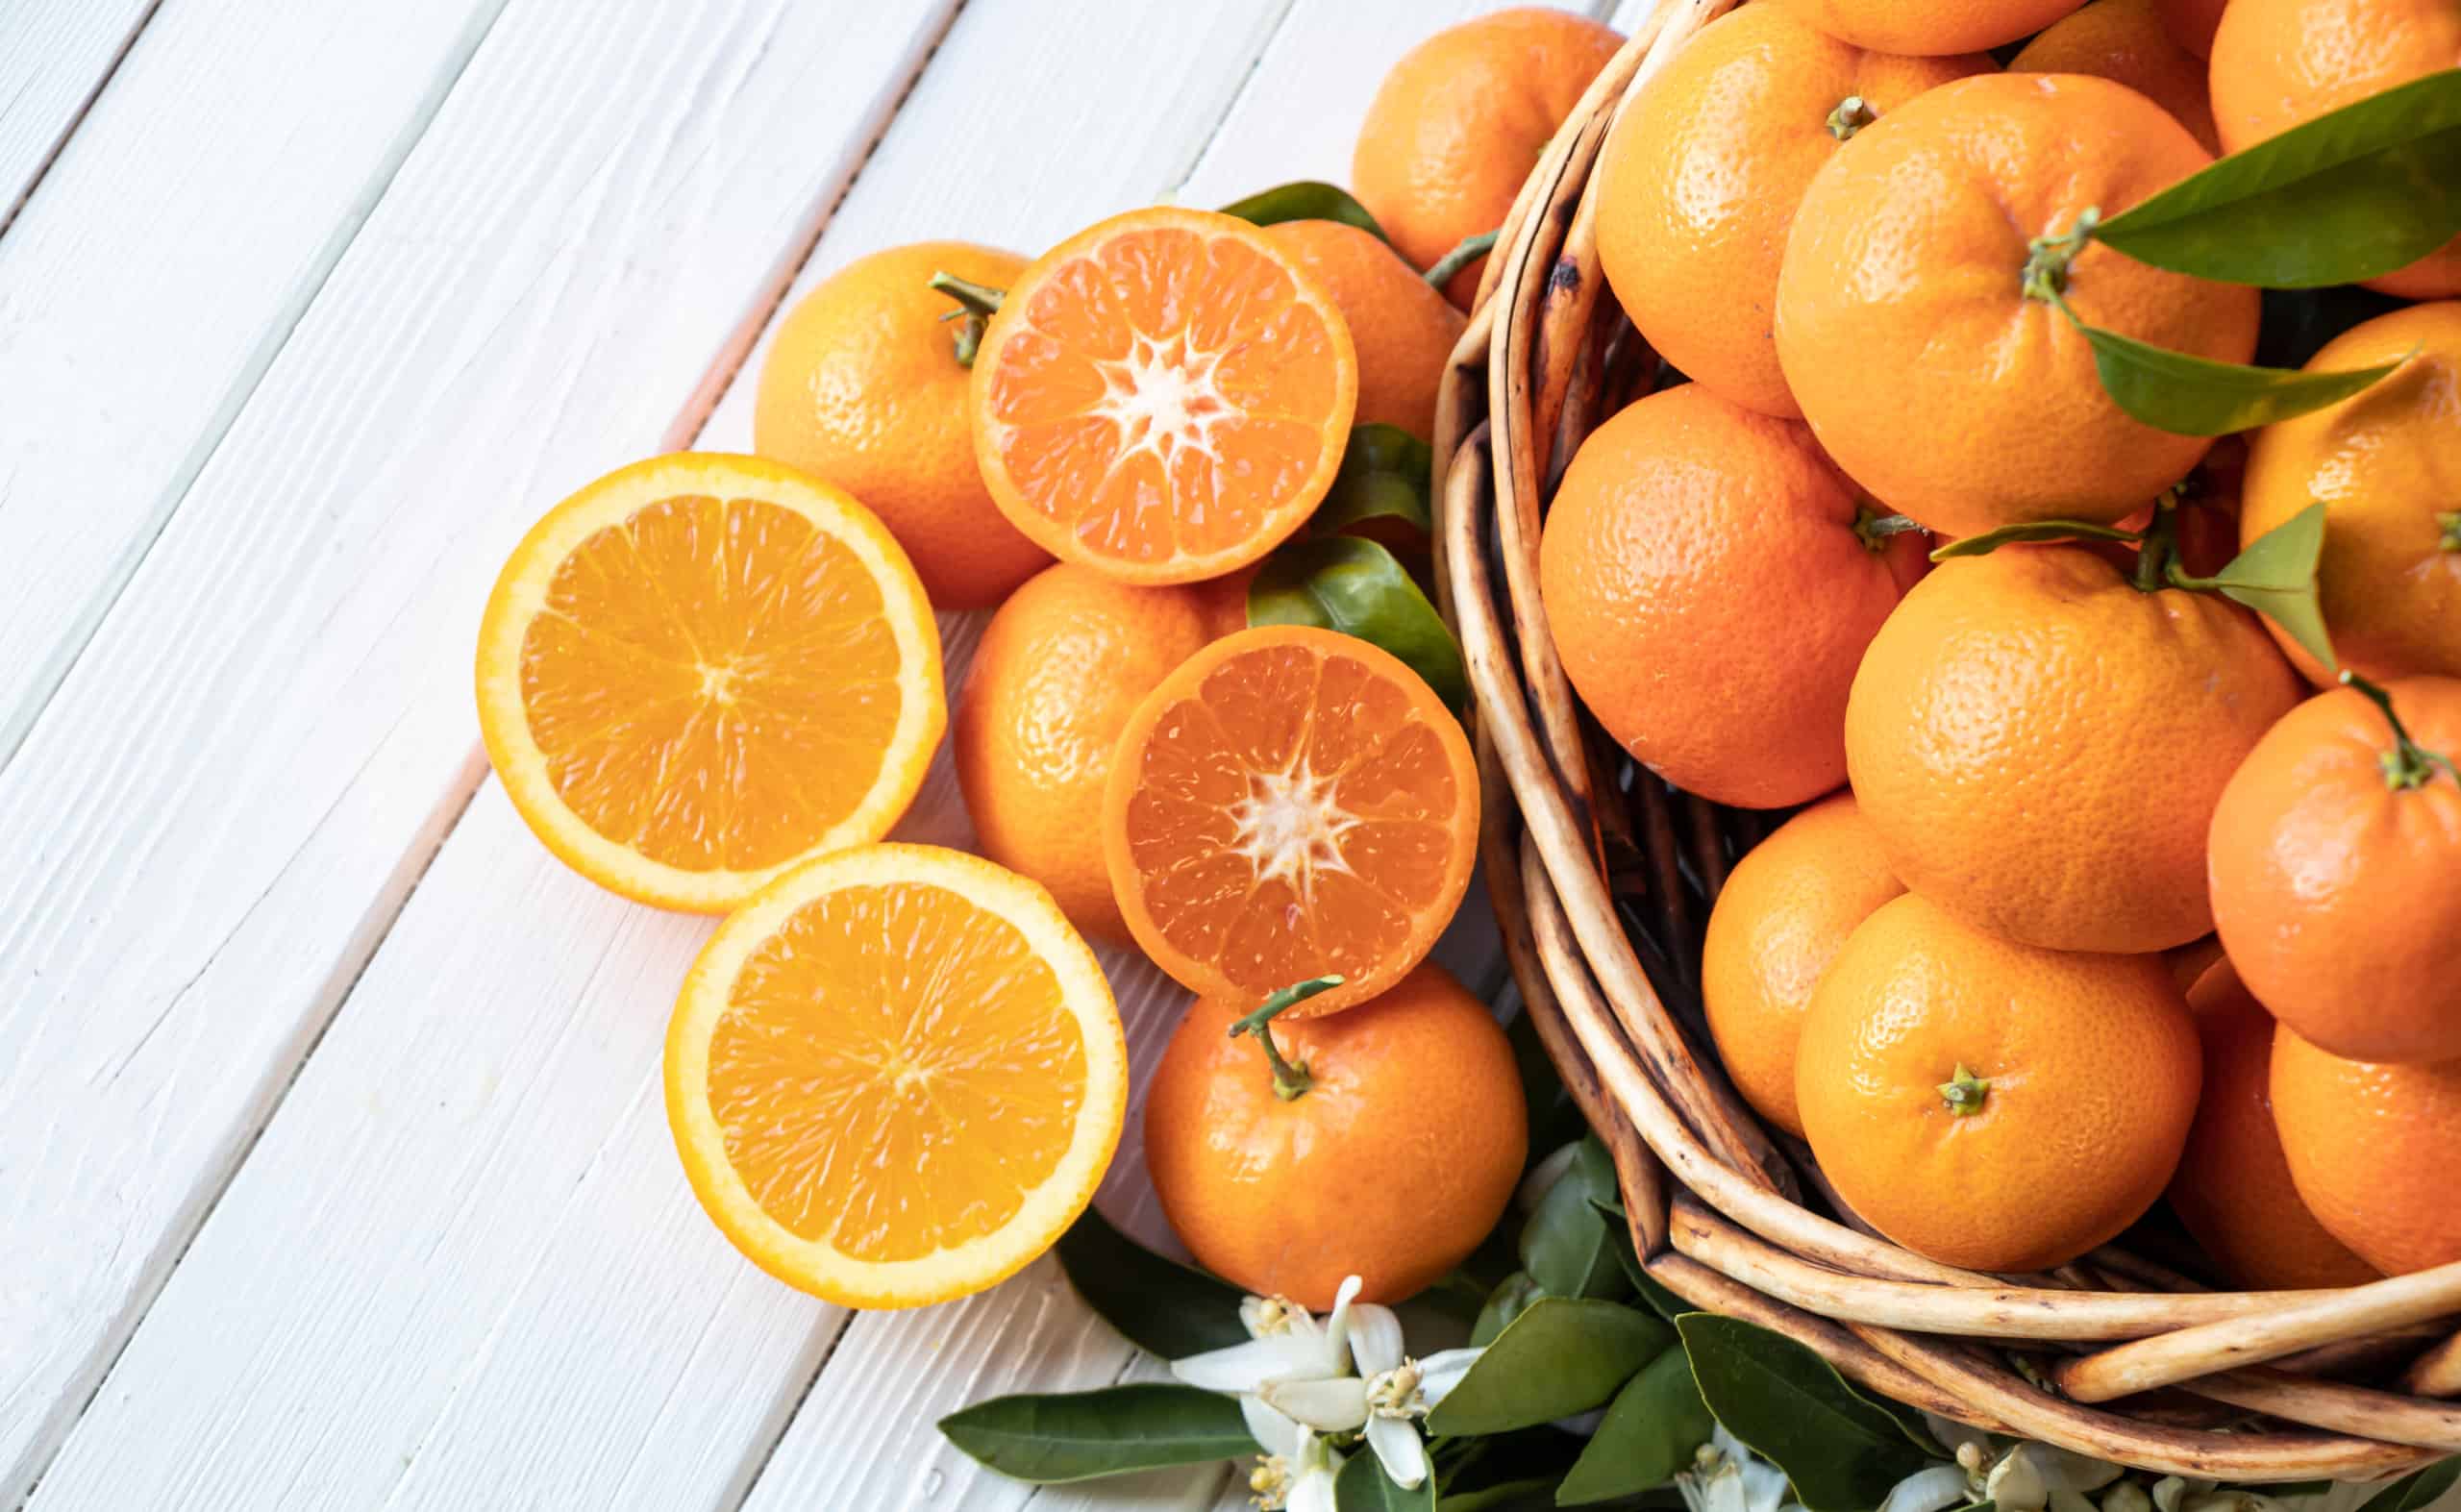 She likes oranges. Фрукты оранжевого цвета. Оранжевые фрукты и овощи. Красивый апельсин. Цитрусовые фрукты.